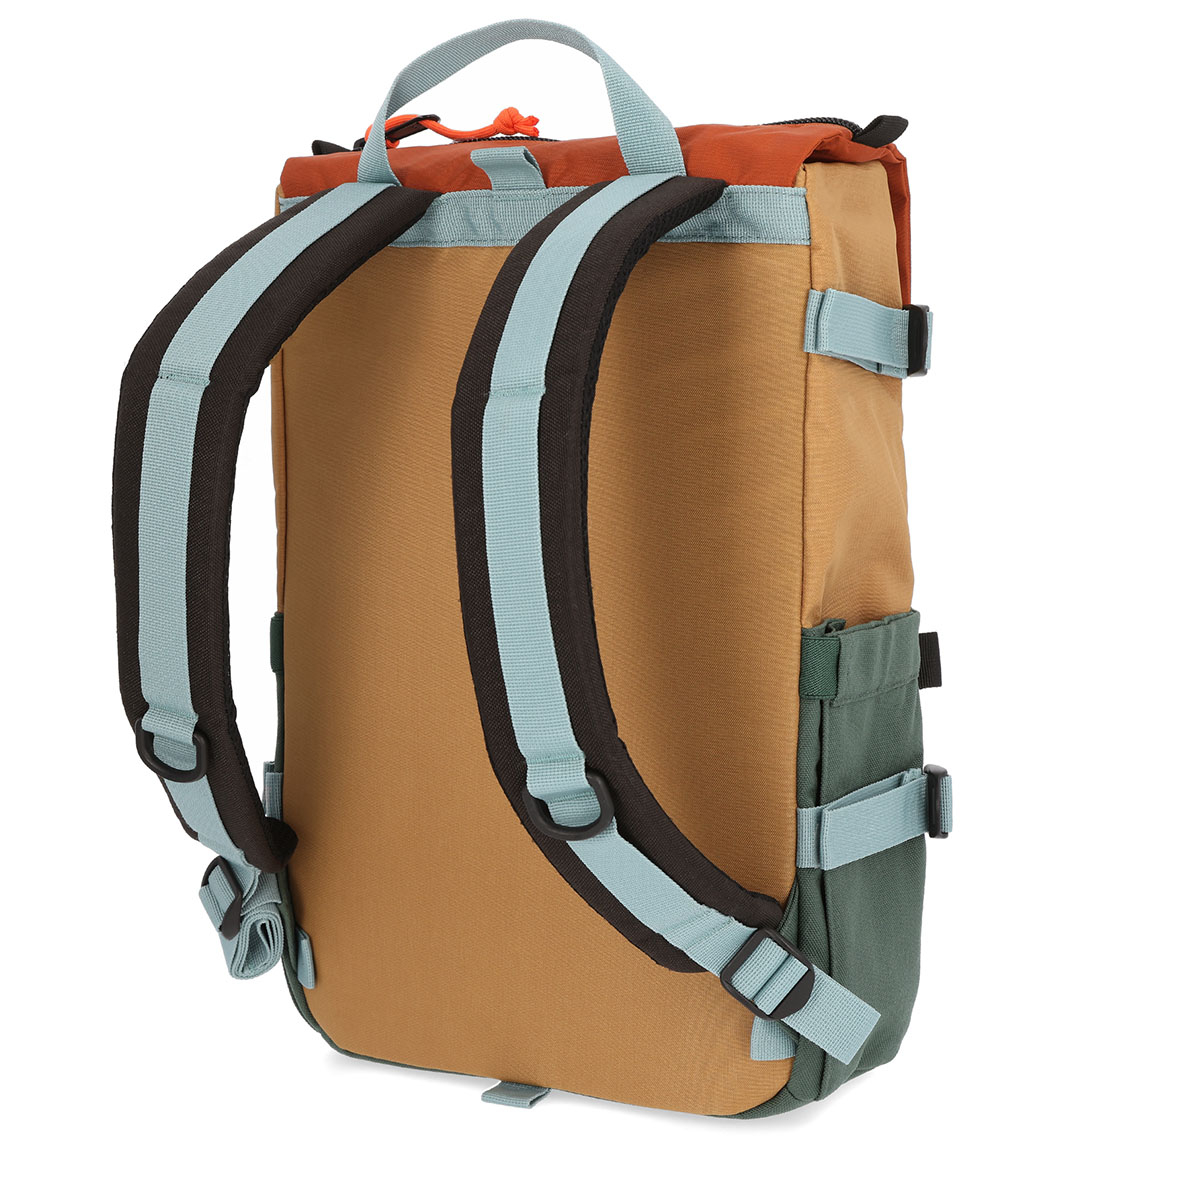 Topo Designs Rover Pack Classic Forest/Khaki, der ideale Rucksack für den täglichen Gebrauch